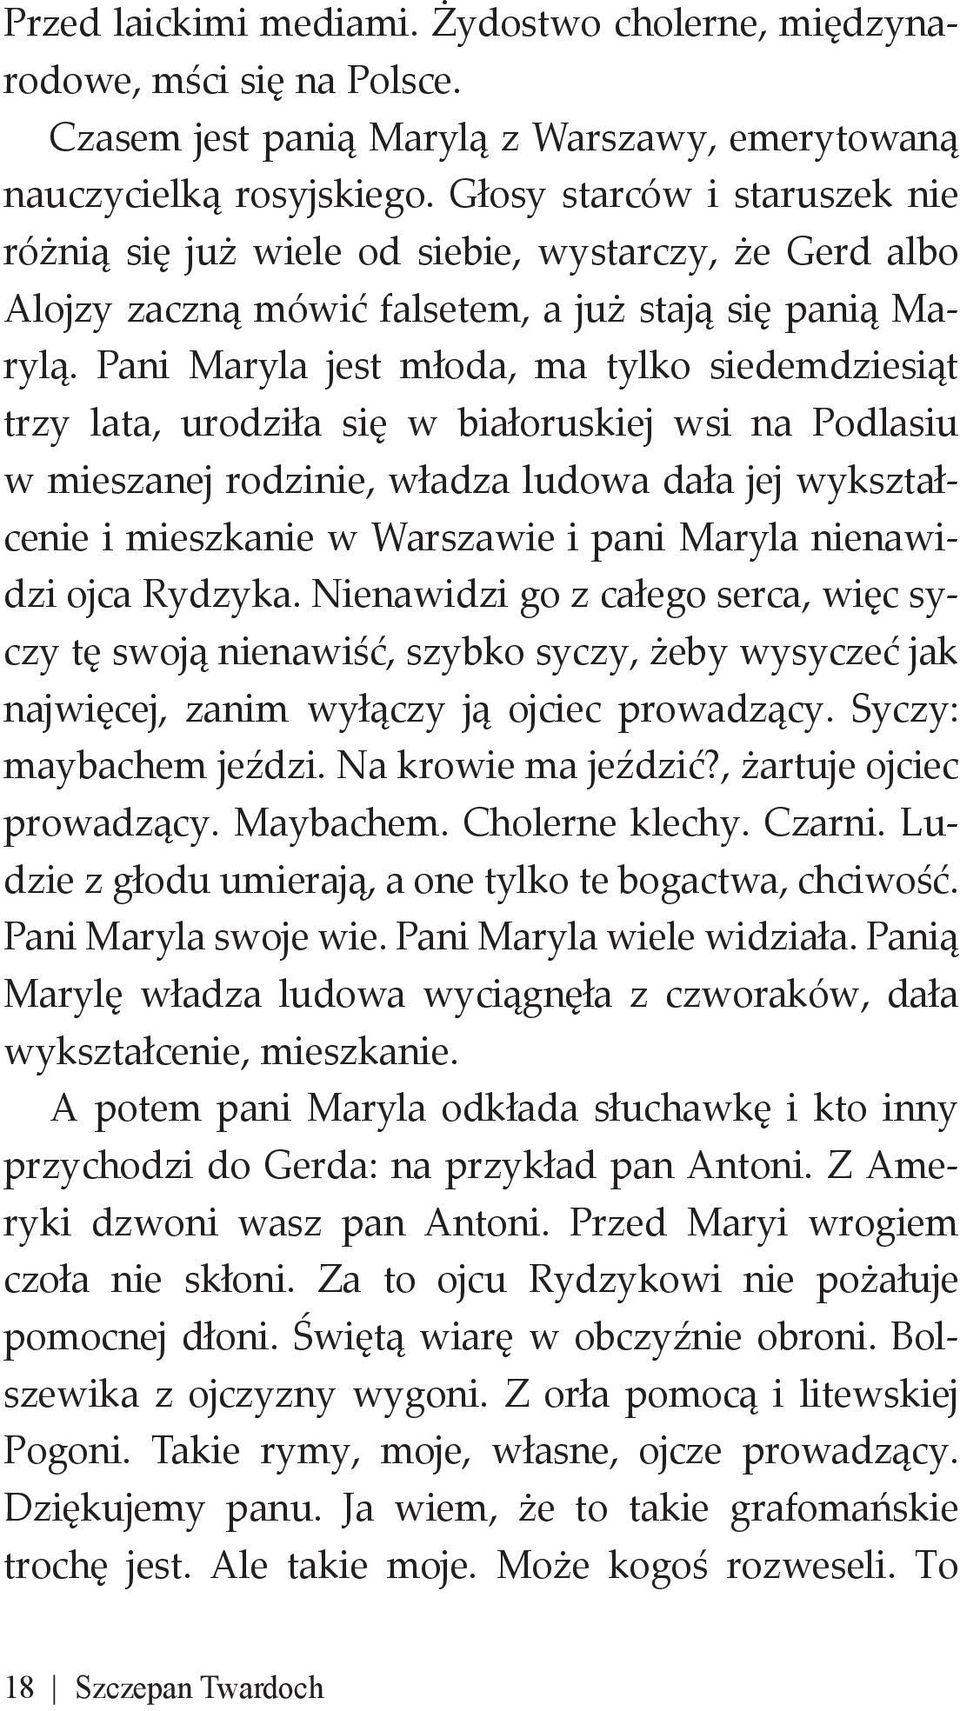 Pani Maryla jest młoda, ma tylko siedemdziesiąt trzy lata, urodziła się w białoruskiej wsi na Podlasiu w mieszanej rodzinie, władza ludowa dała jej wykształcenie i mieszkanie w Warszawie i pani